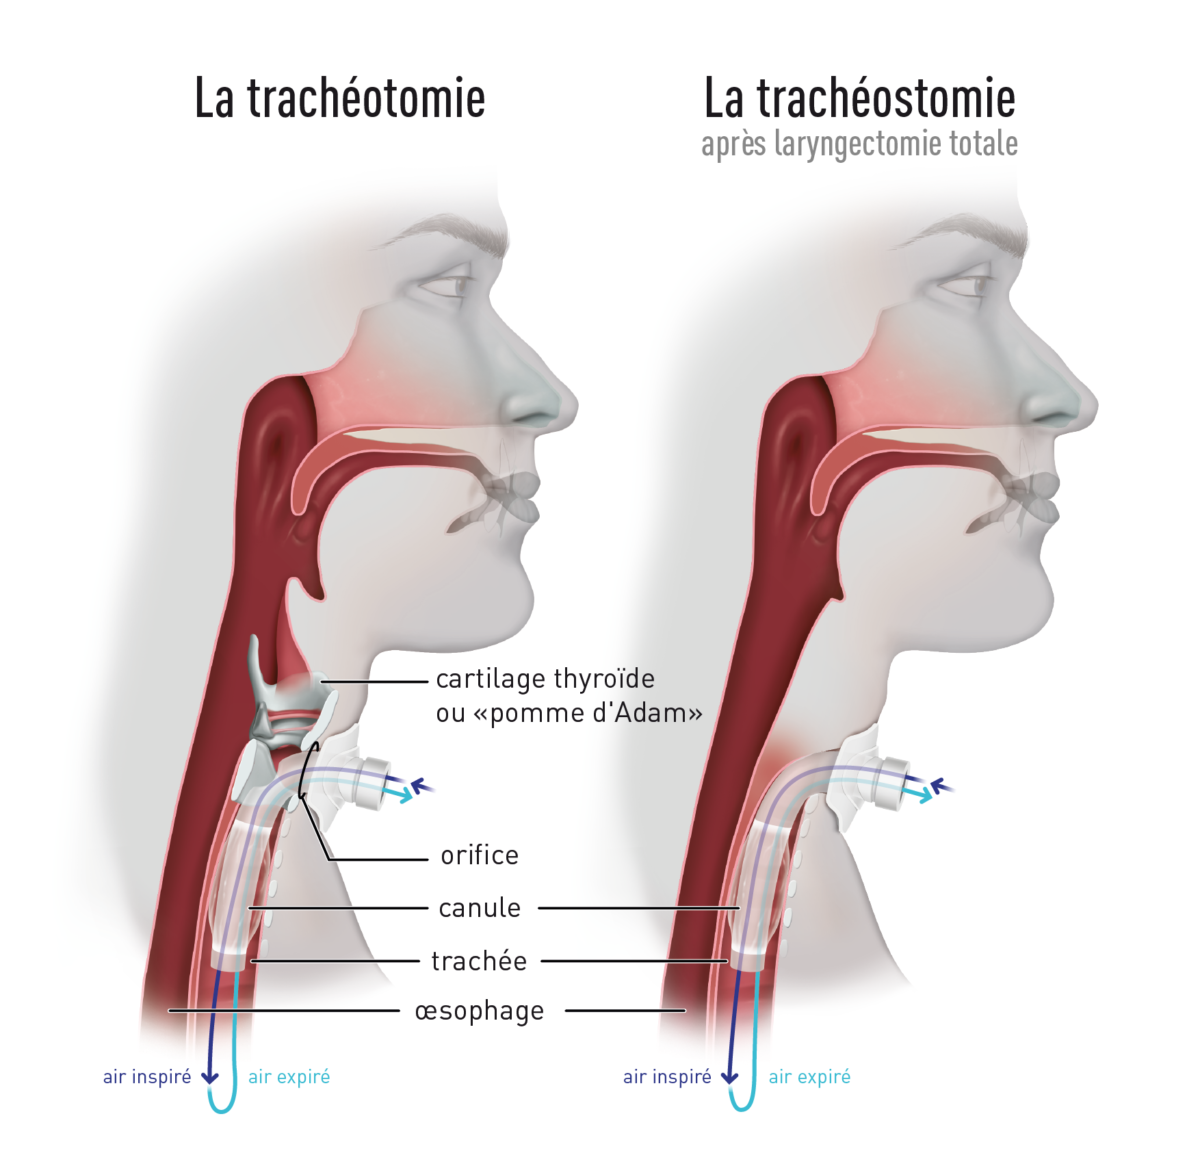 La-tracheotomie-et-la-tracheostomie-1200x1164.png